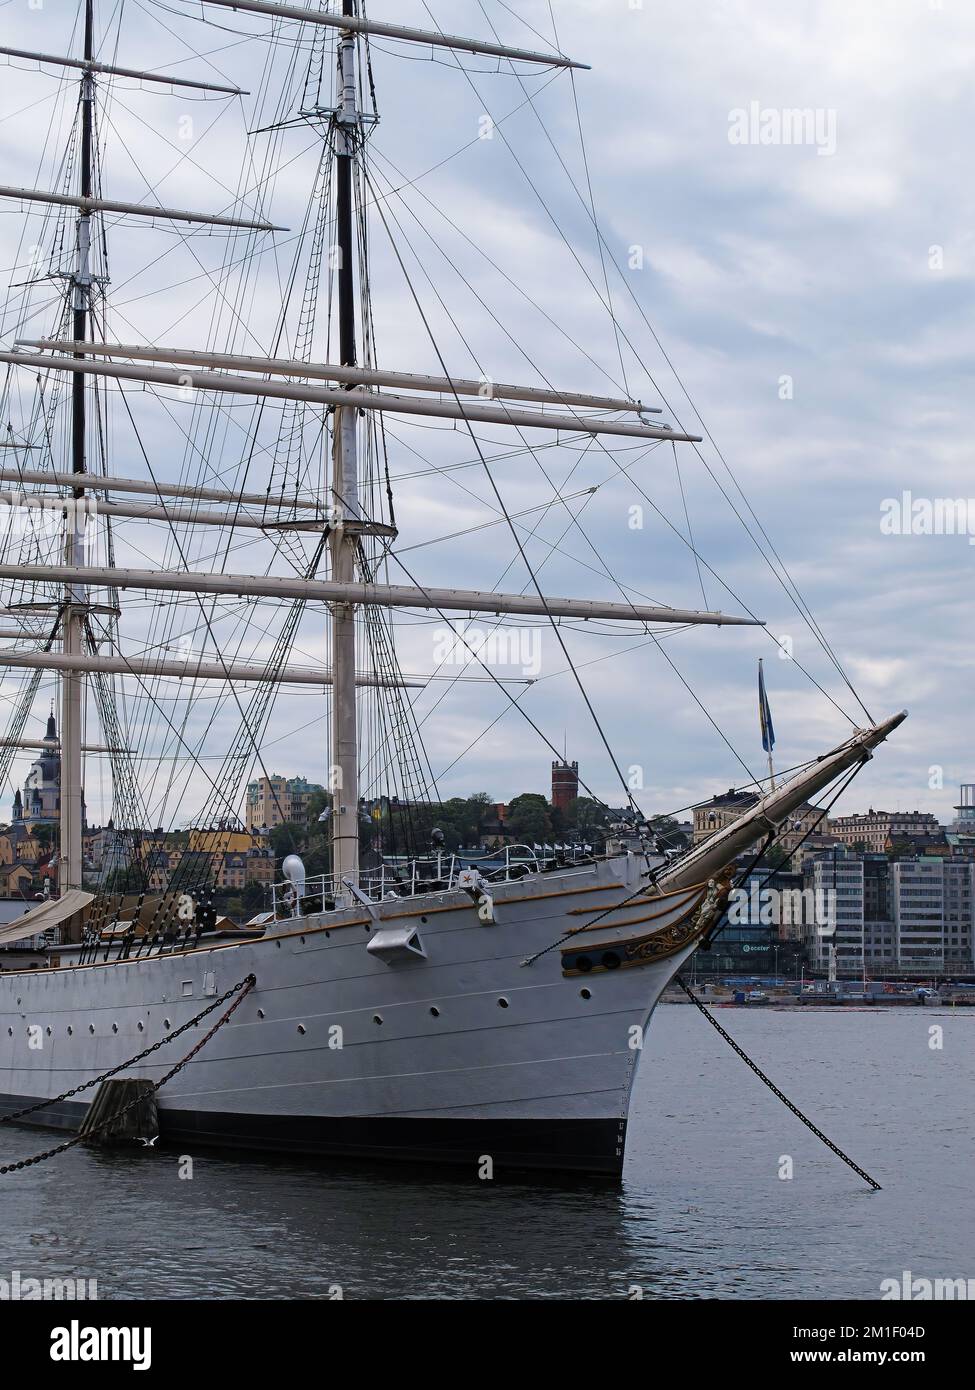 Stoccolma, Svezia - 12 luglio 2018: Grande nave a vela con diversi alberi nel porto Foto Stock